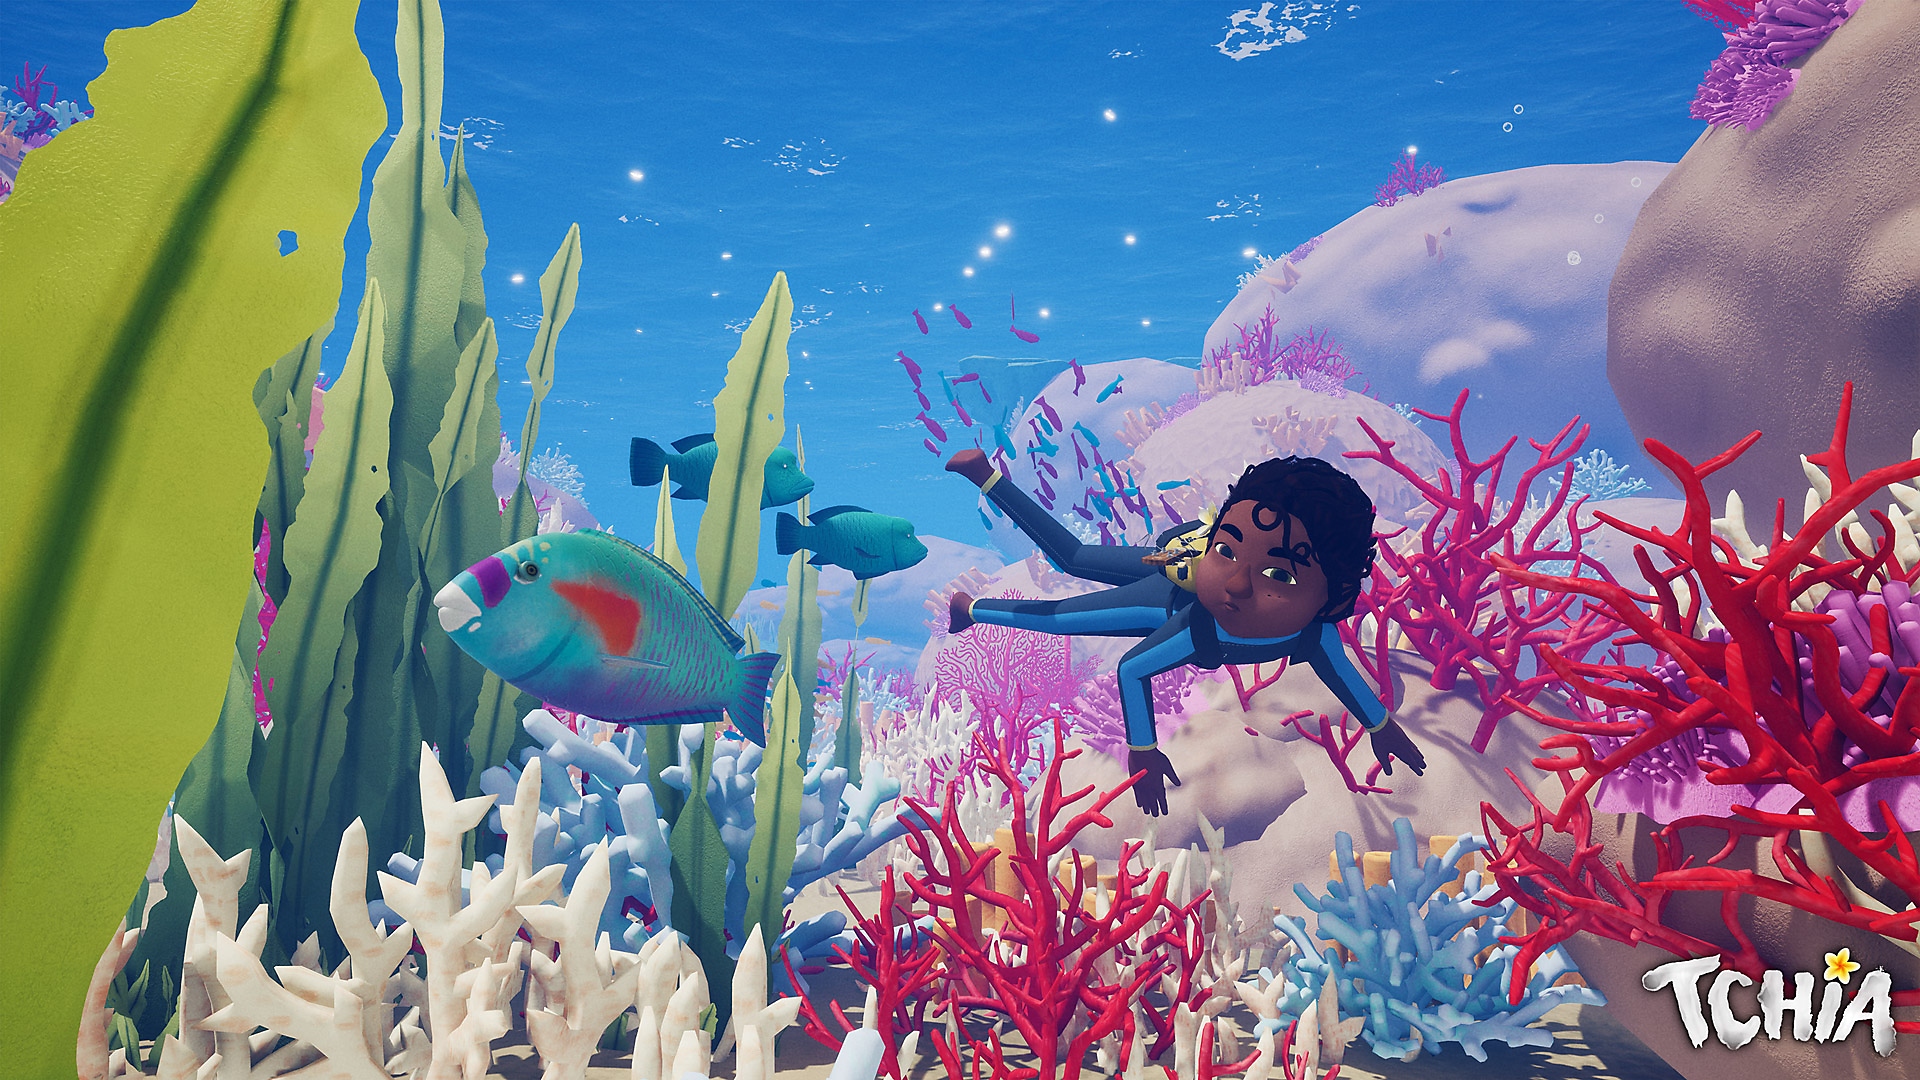 Tchia-Heldengrafik, die die Protagonistin zeigt, wie sie durch eine Unterwasserszene schwimmt